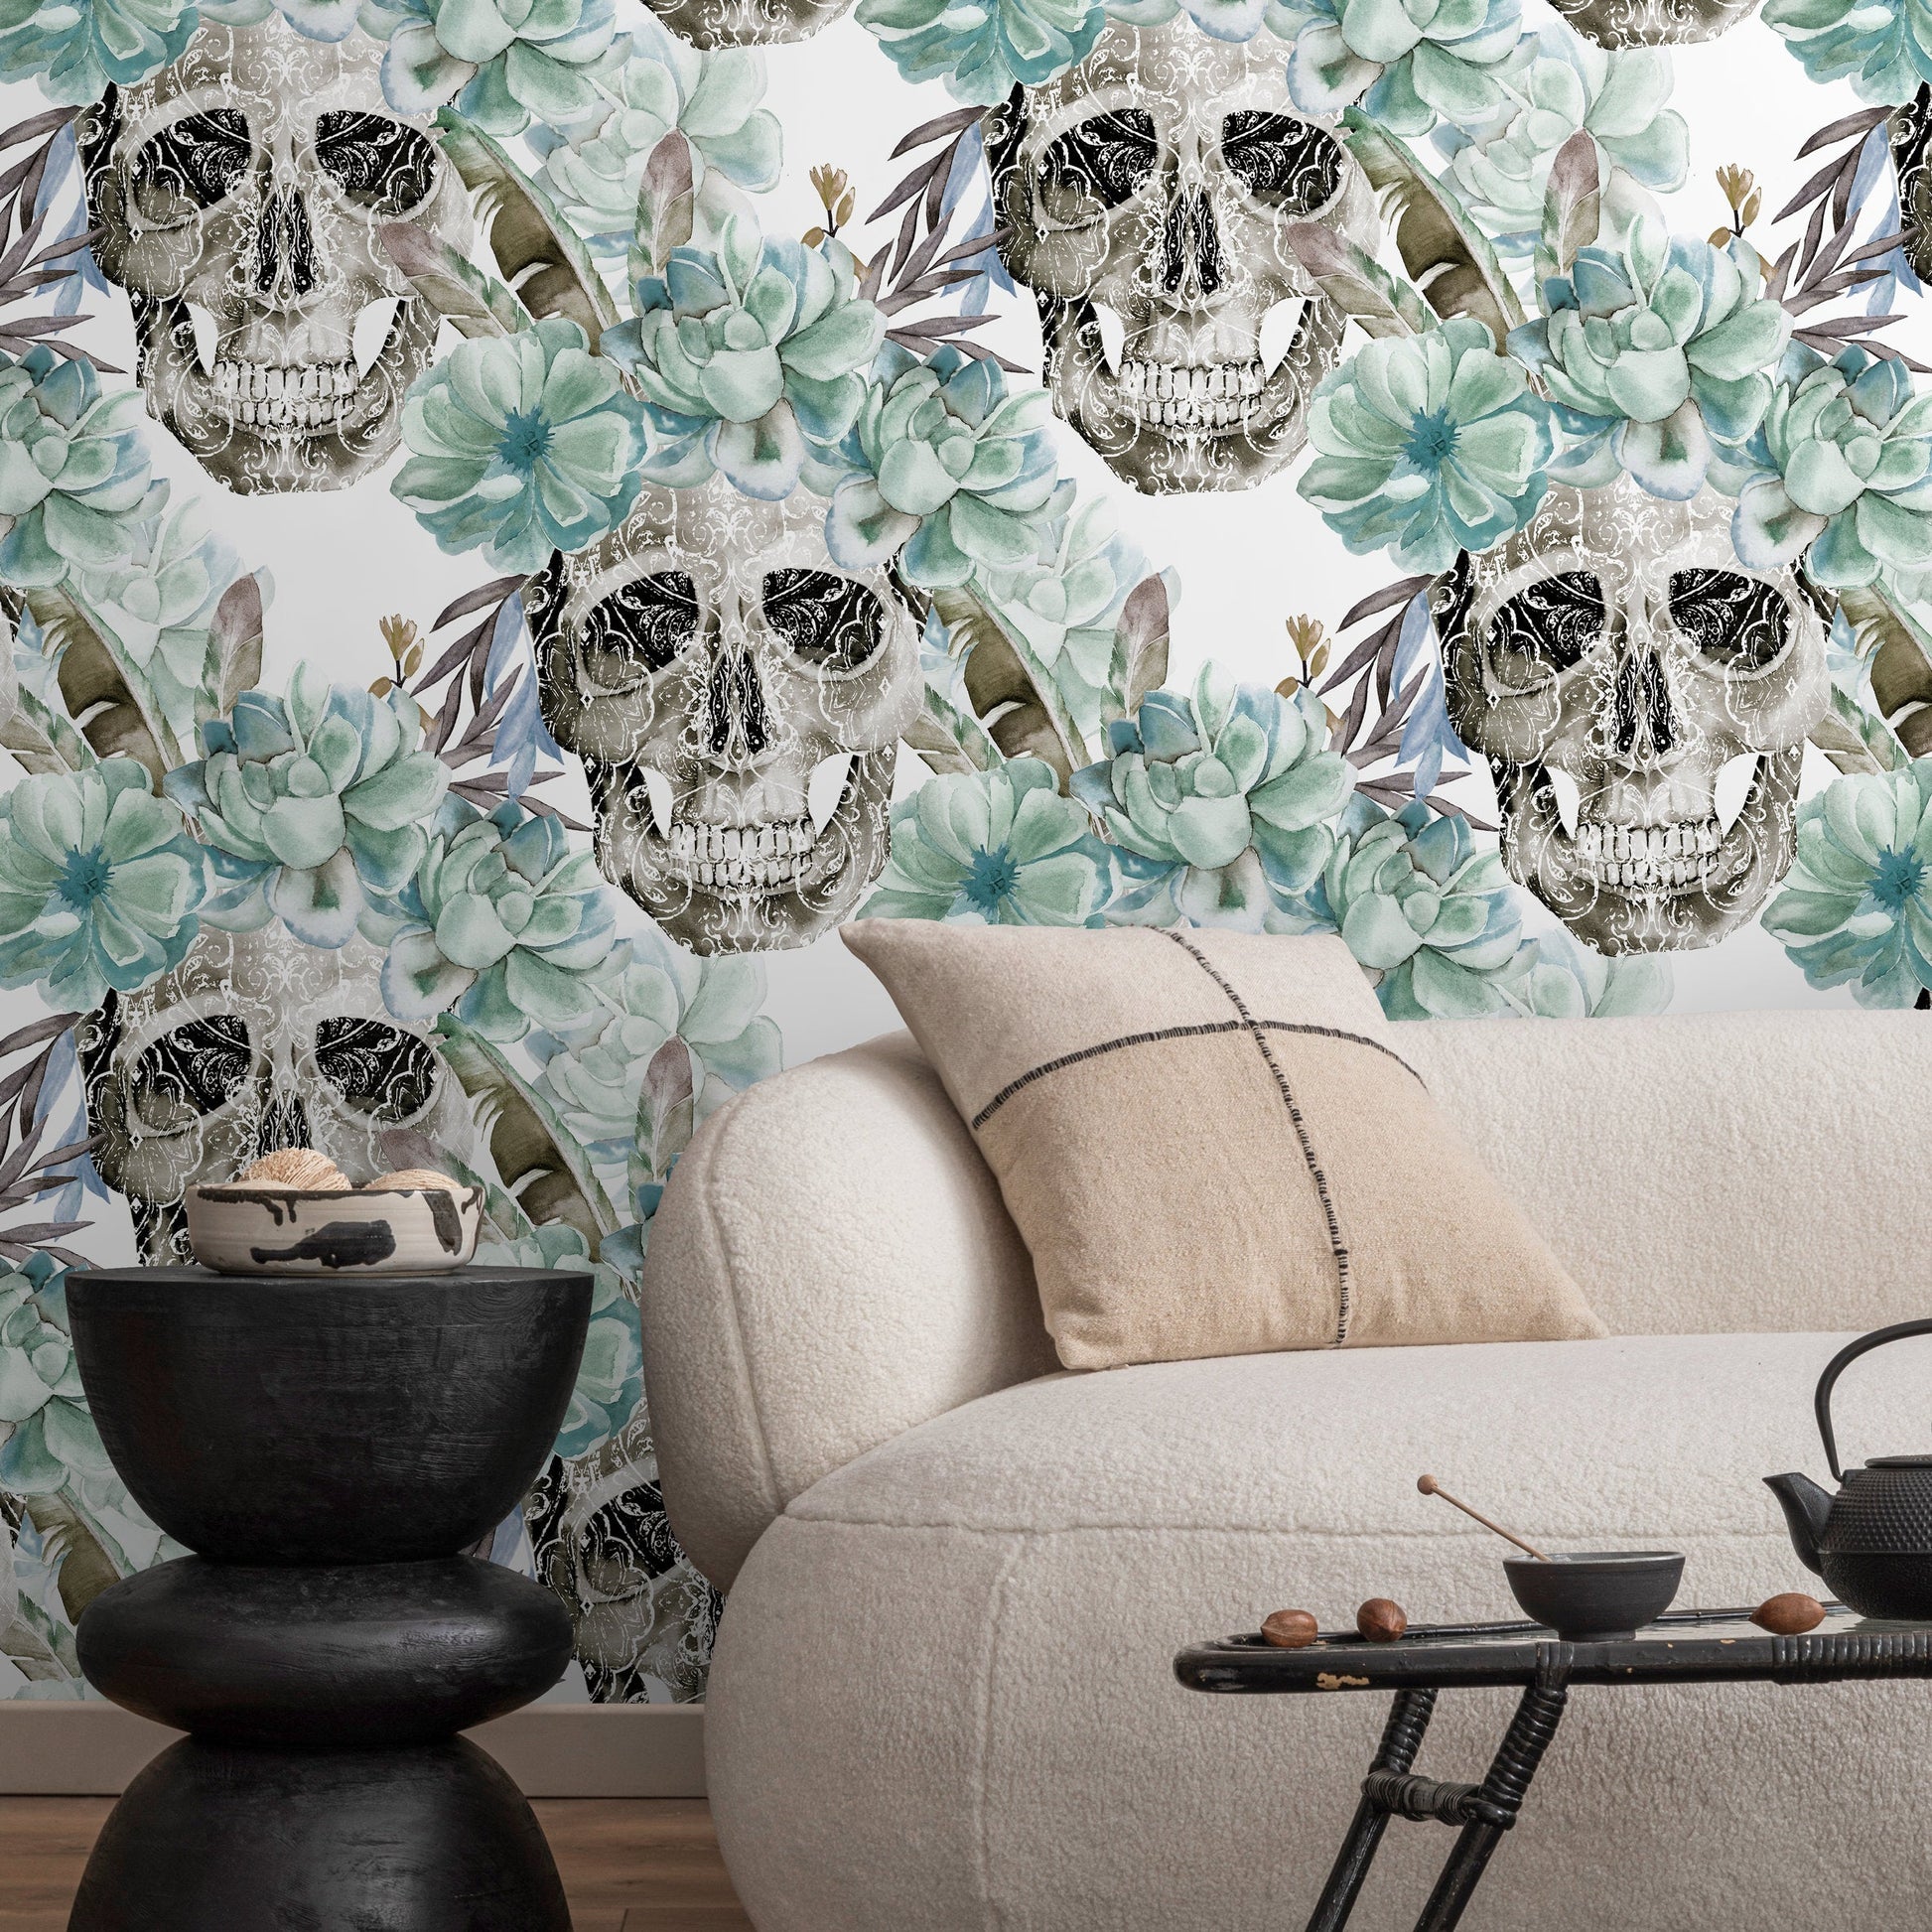 Vintage Floral Wallpaper Succulent and Skull Wallpaper Peel and Stick and Traditional Wallpaper - D925